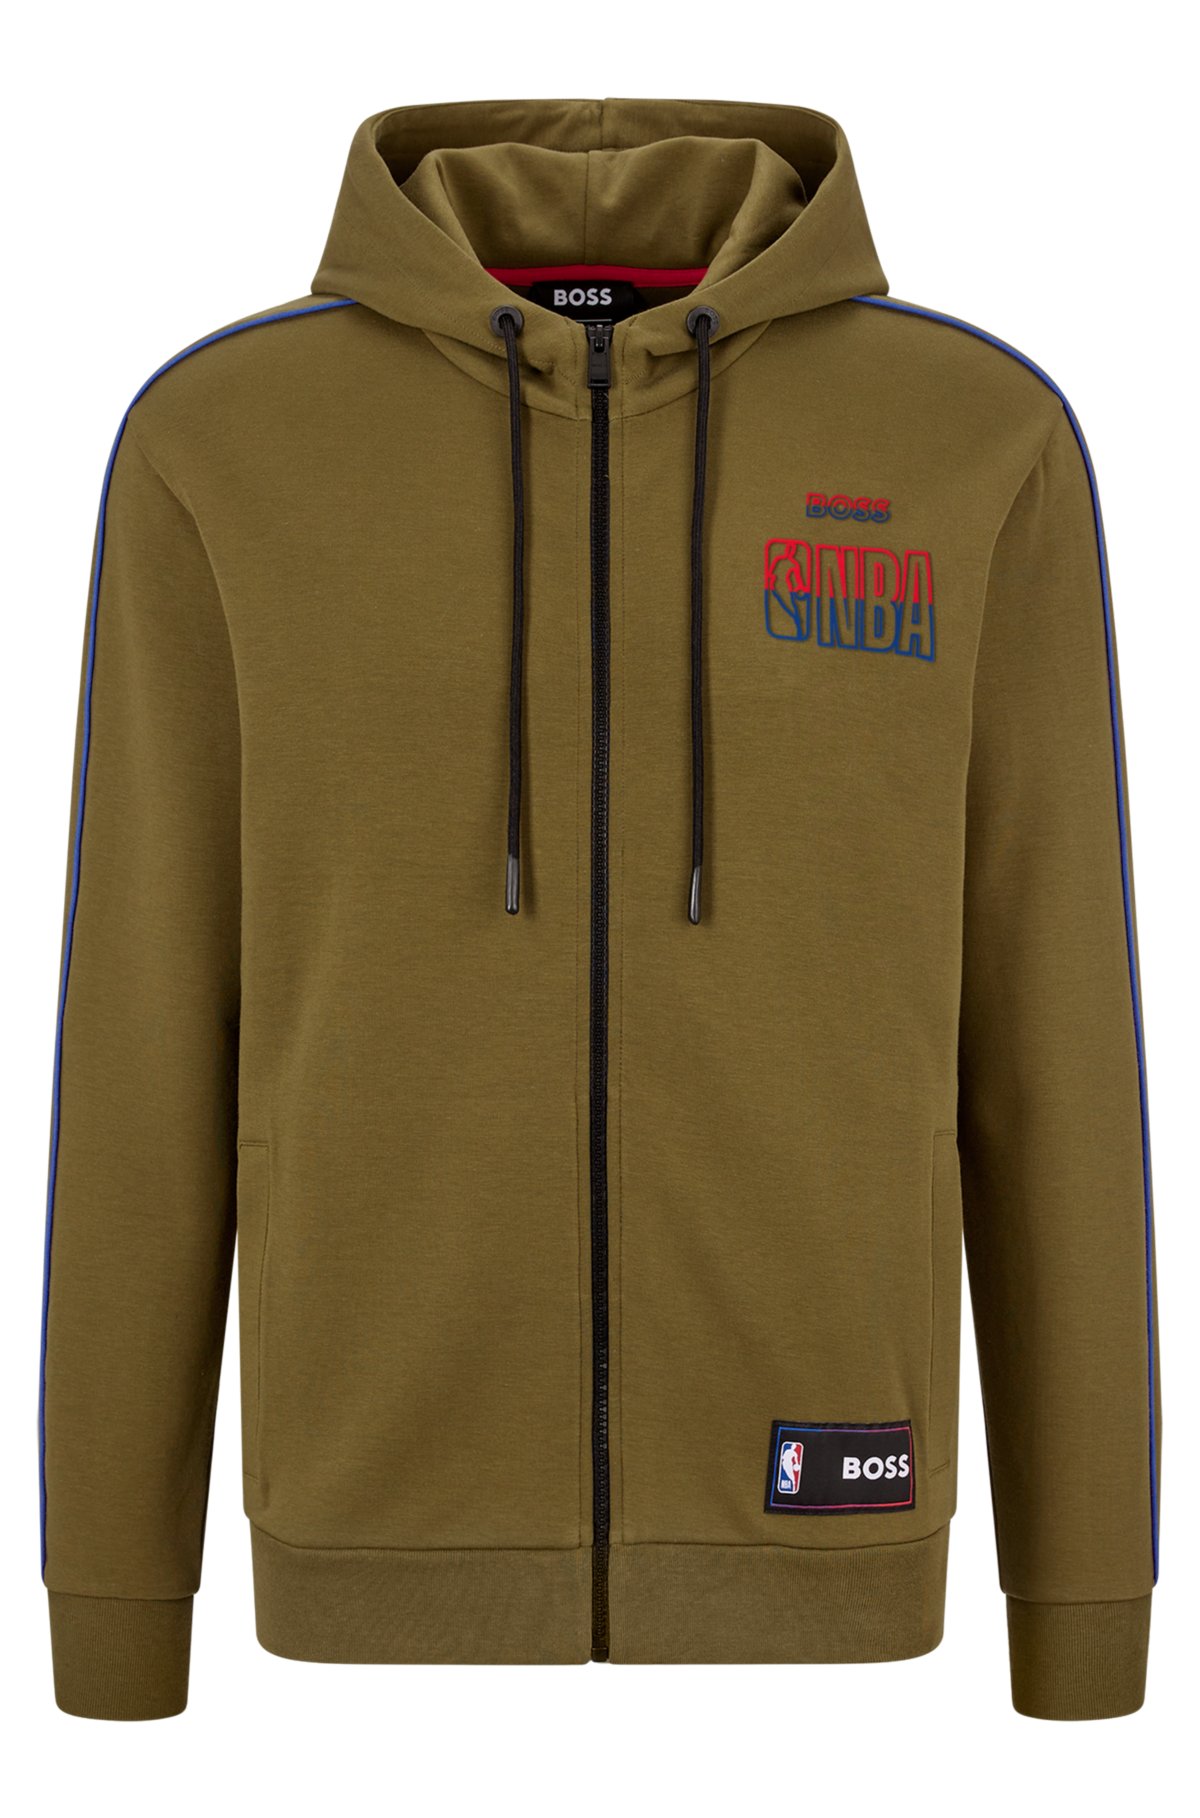 Hood Jacket,Jacket Set,Jacket-Pants Set,NBA,Shop Now,Online store